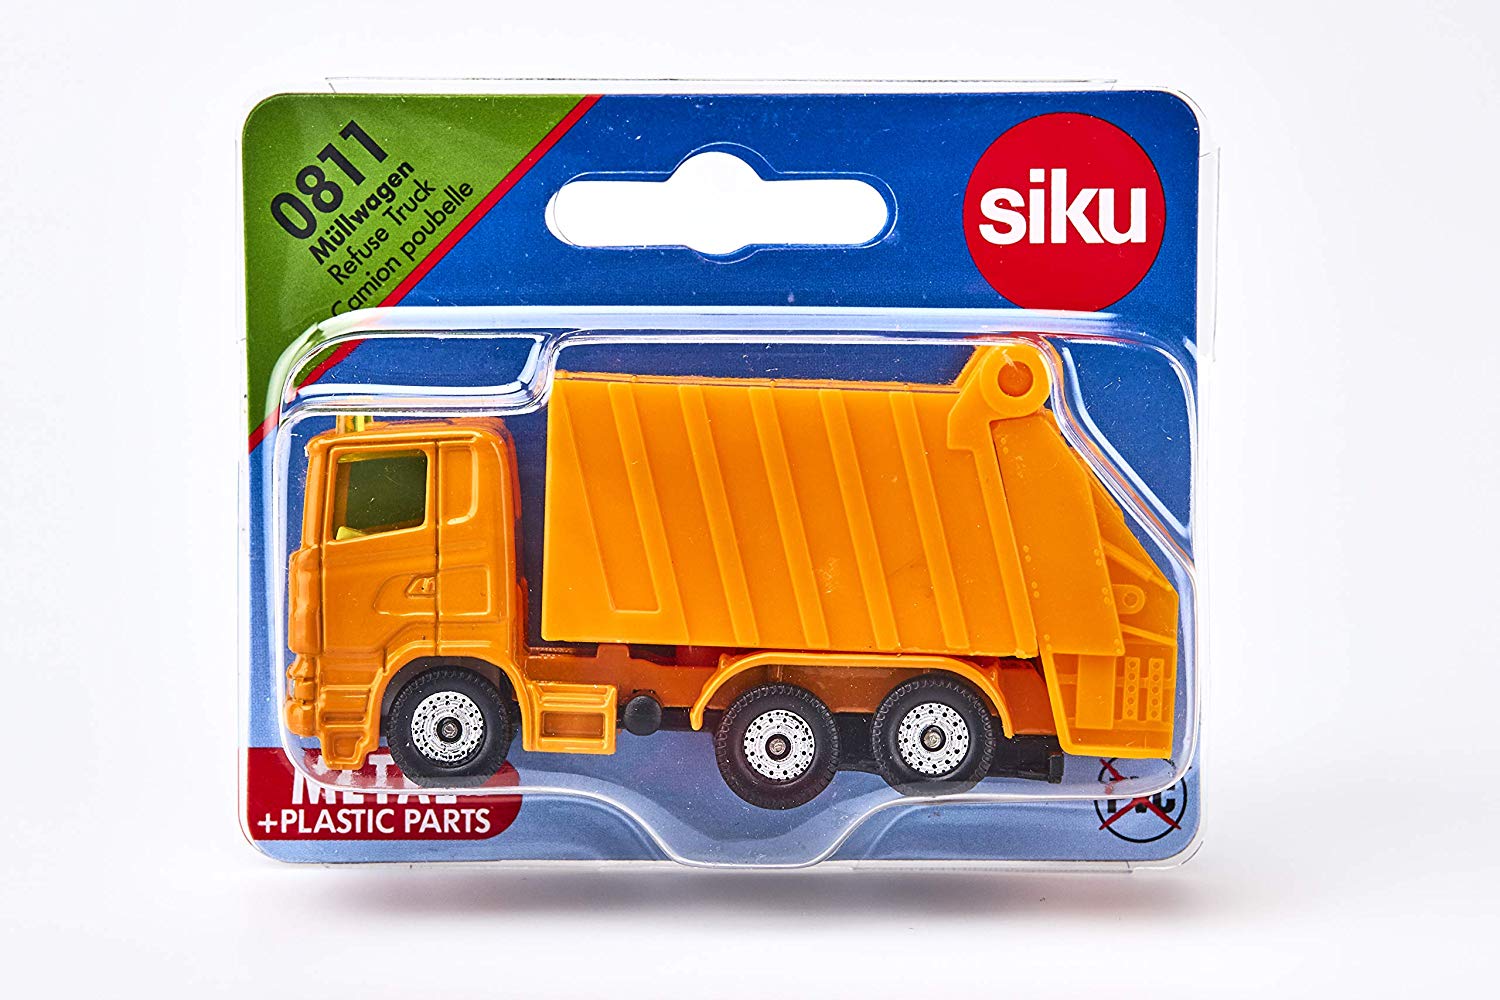 kidz-stuff-online - Siku 0811 Refuse Truck